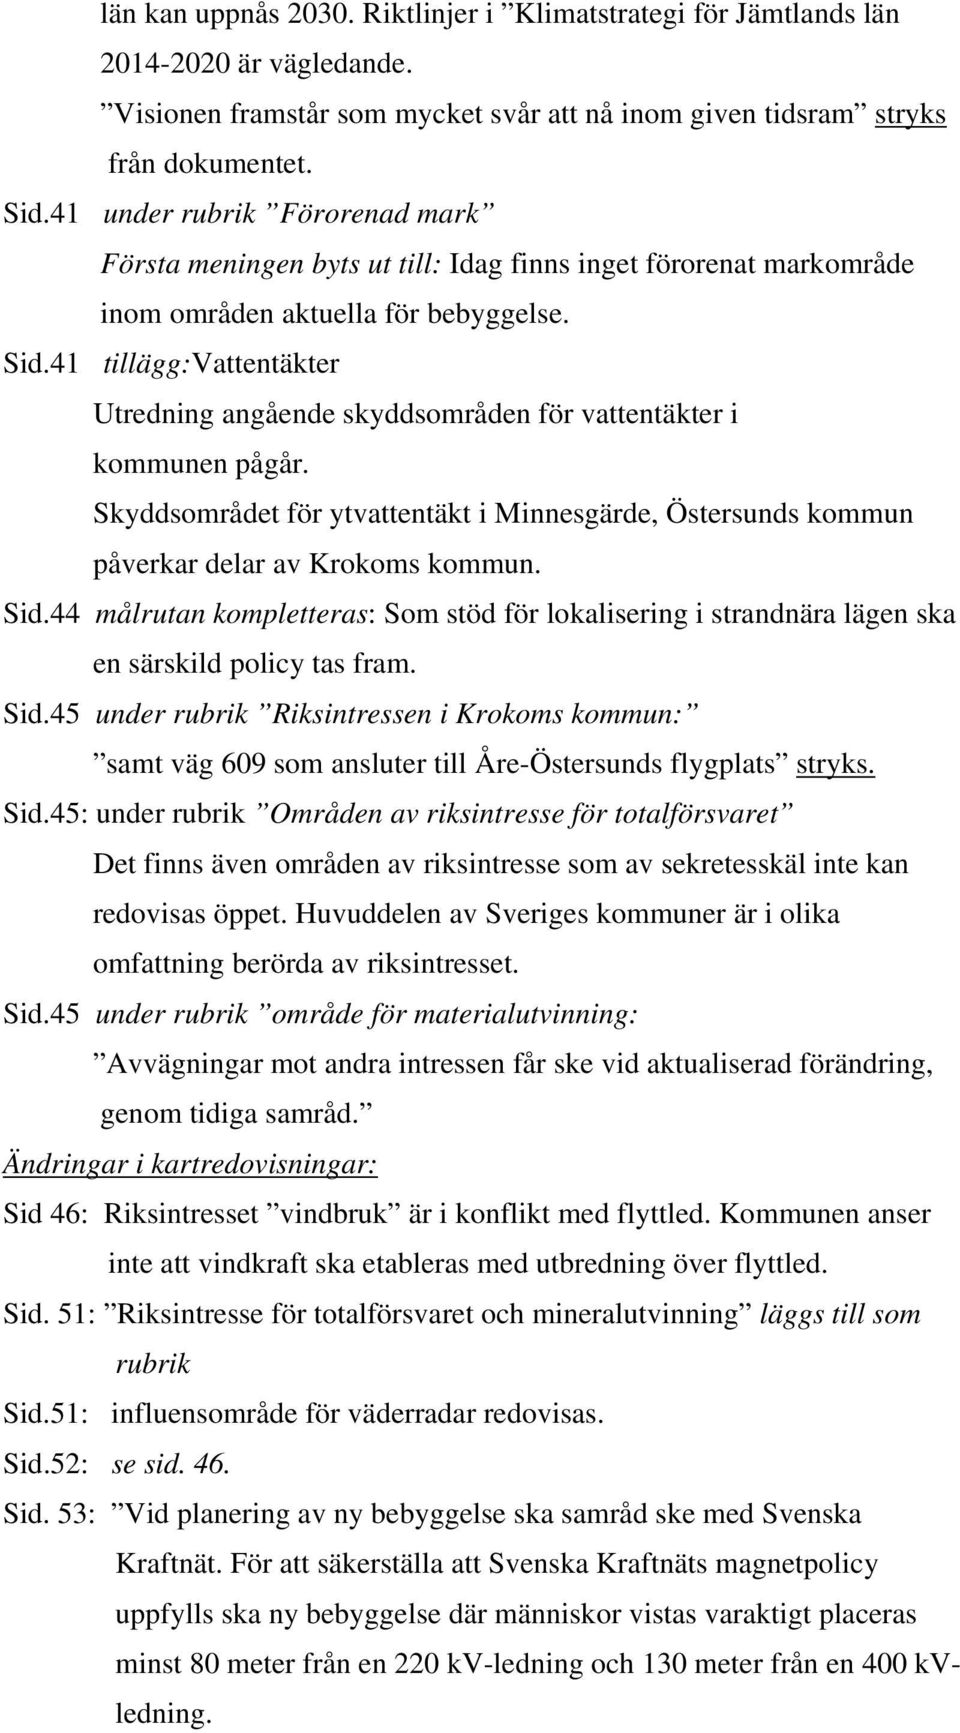 41 tillägg:vattentäkter Utredning angående skyddsområden för vattentäkter i kommunen pågår. Skyddsområdet för ytvattentäkt i Minnesgärde, Östersunds kommun påverkar delar av Krokoms kommun. Sid.